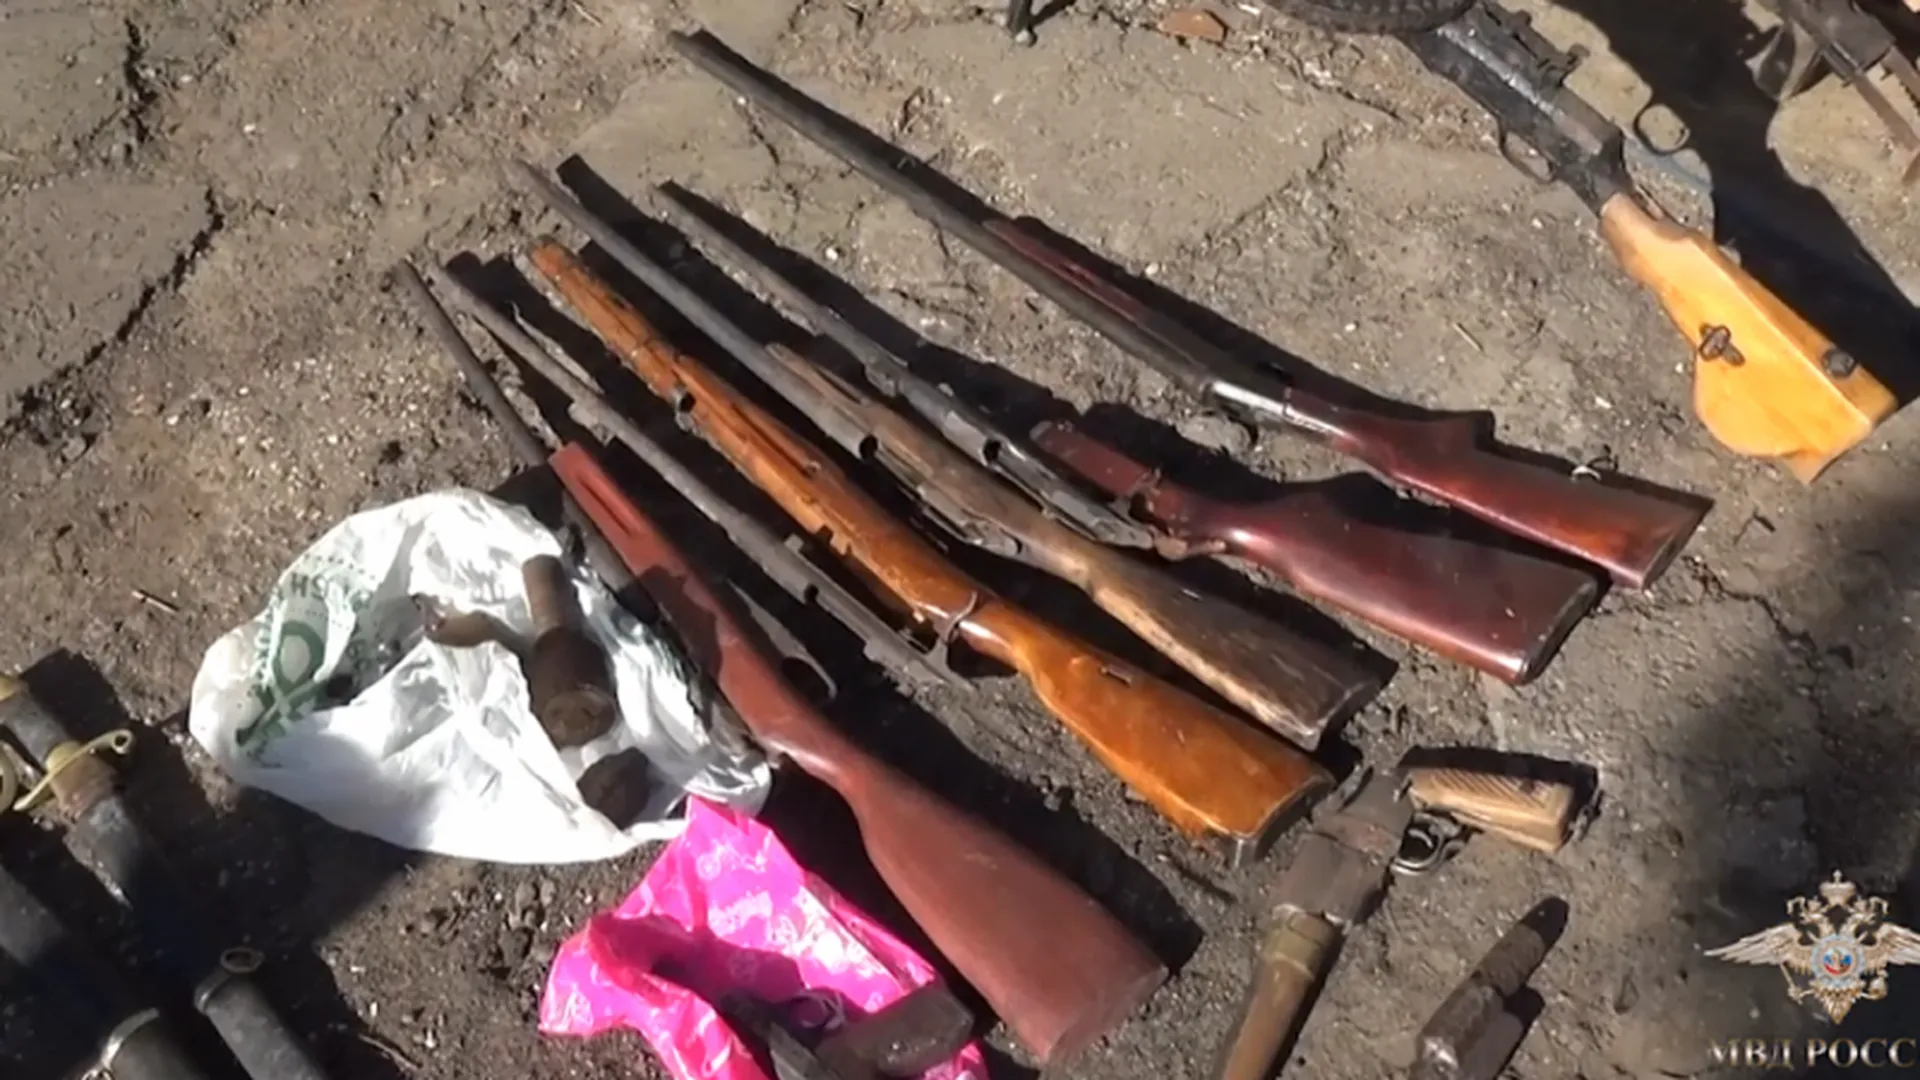 Арсенал оружия с пулеметом, гранатами и револьверами нашли у пенсионера в Дедовске